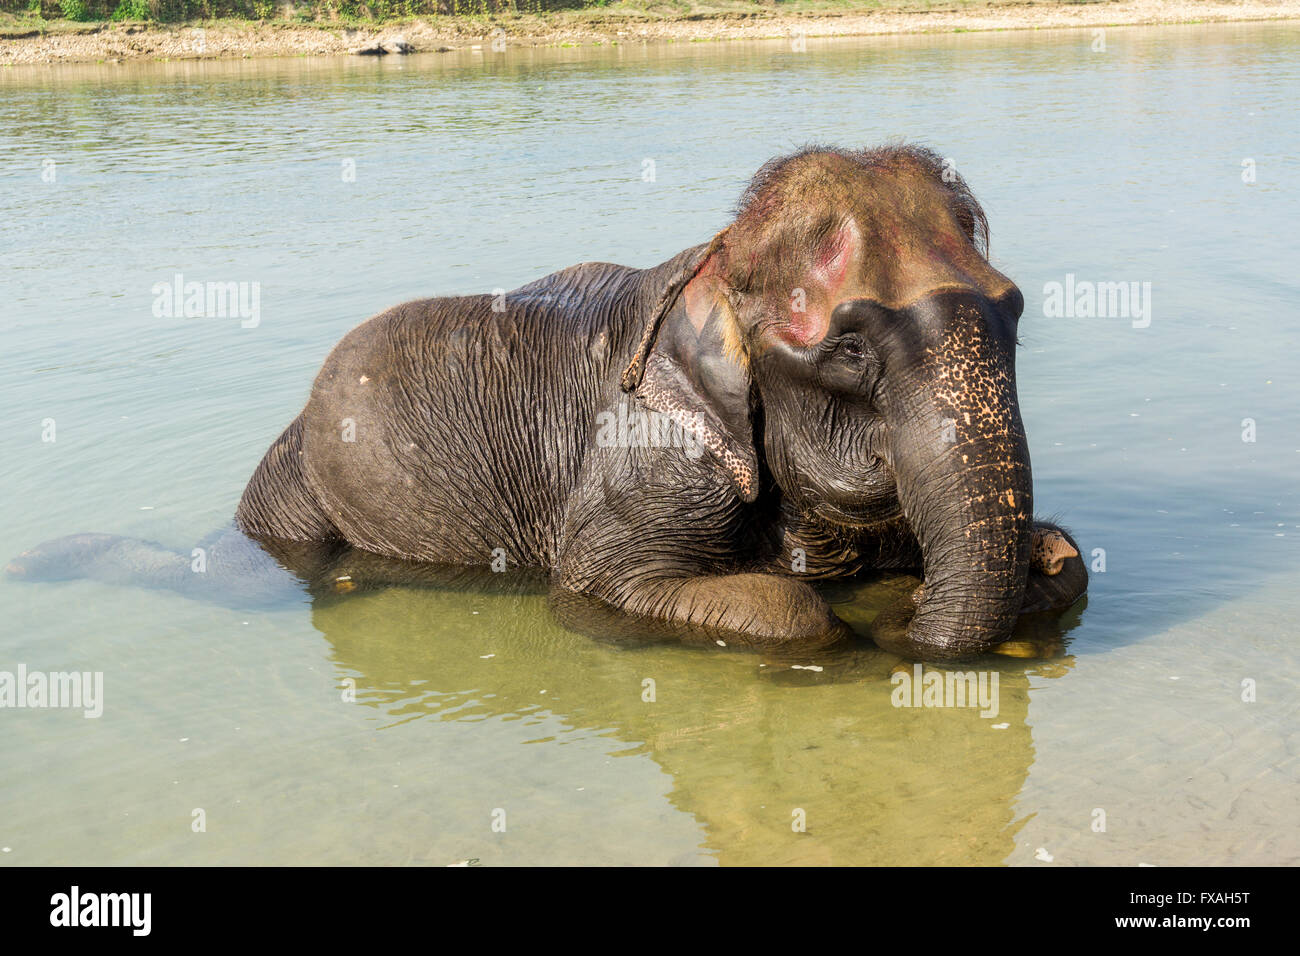 Les jeunes domestiques éléphant d'Asie (Elephas maximus) baignade en rivière peu profonde, Chitwan, Chitwan, Népal Banque D'Images